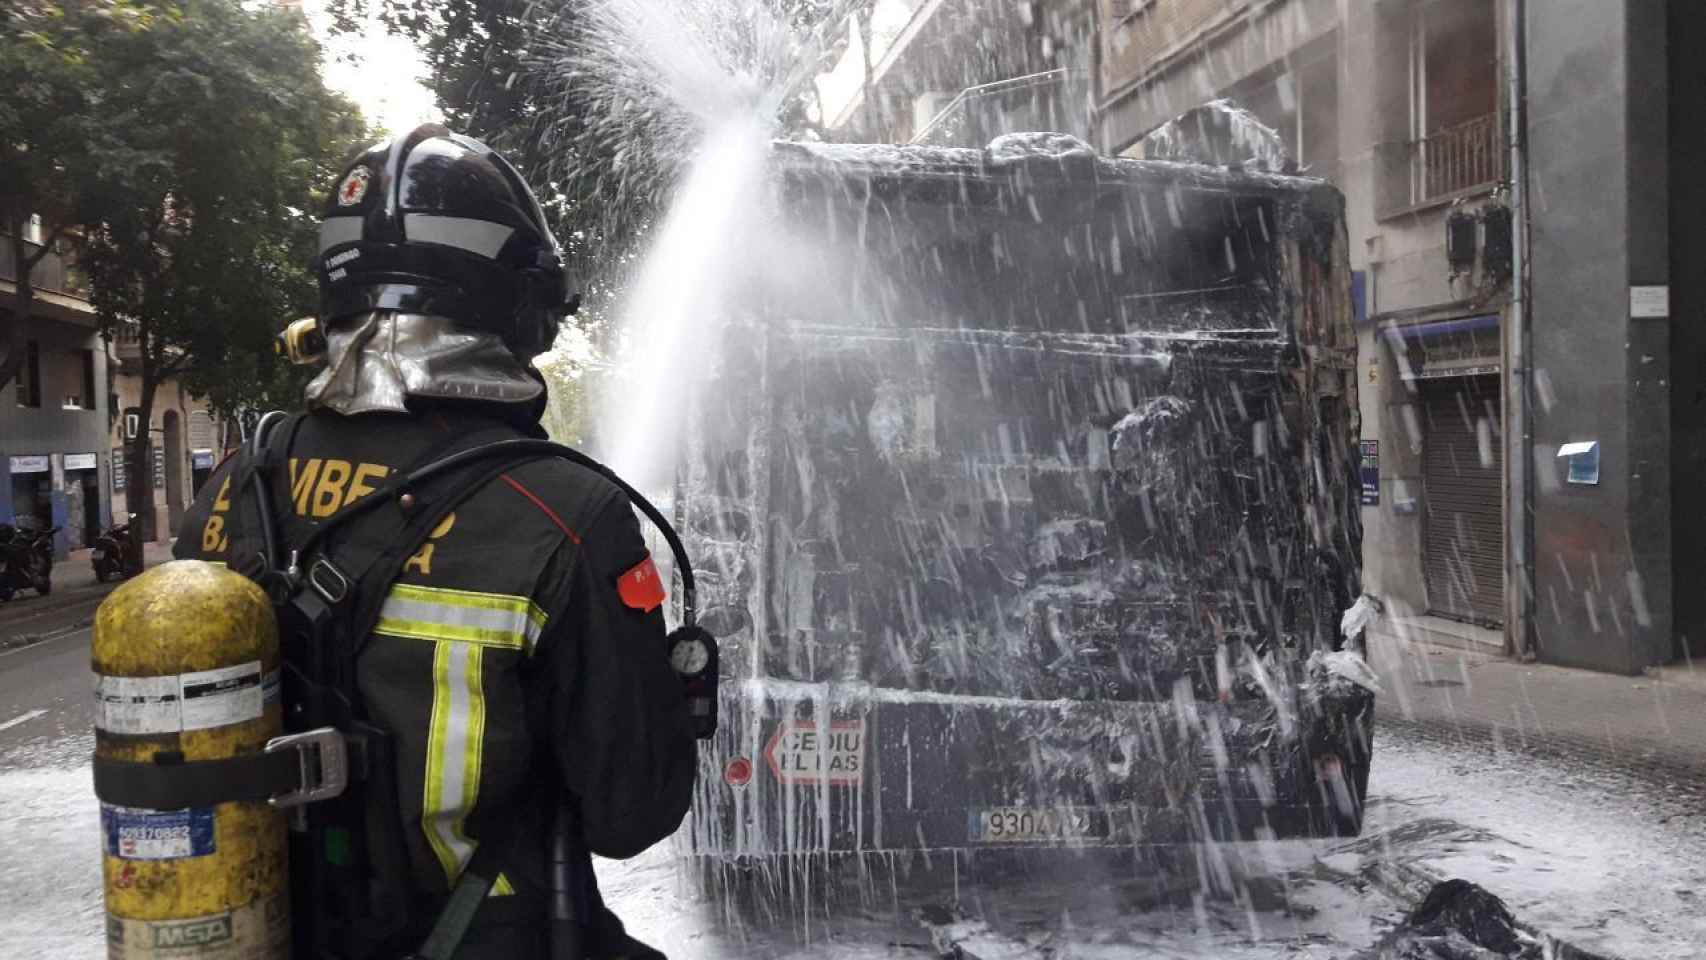 Un bombero trabaja para apagar el incendio en un bus en una imagen de archivo / BOMBERS DE BARCELONA